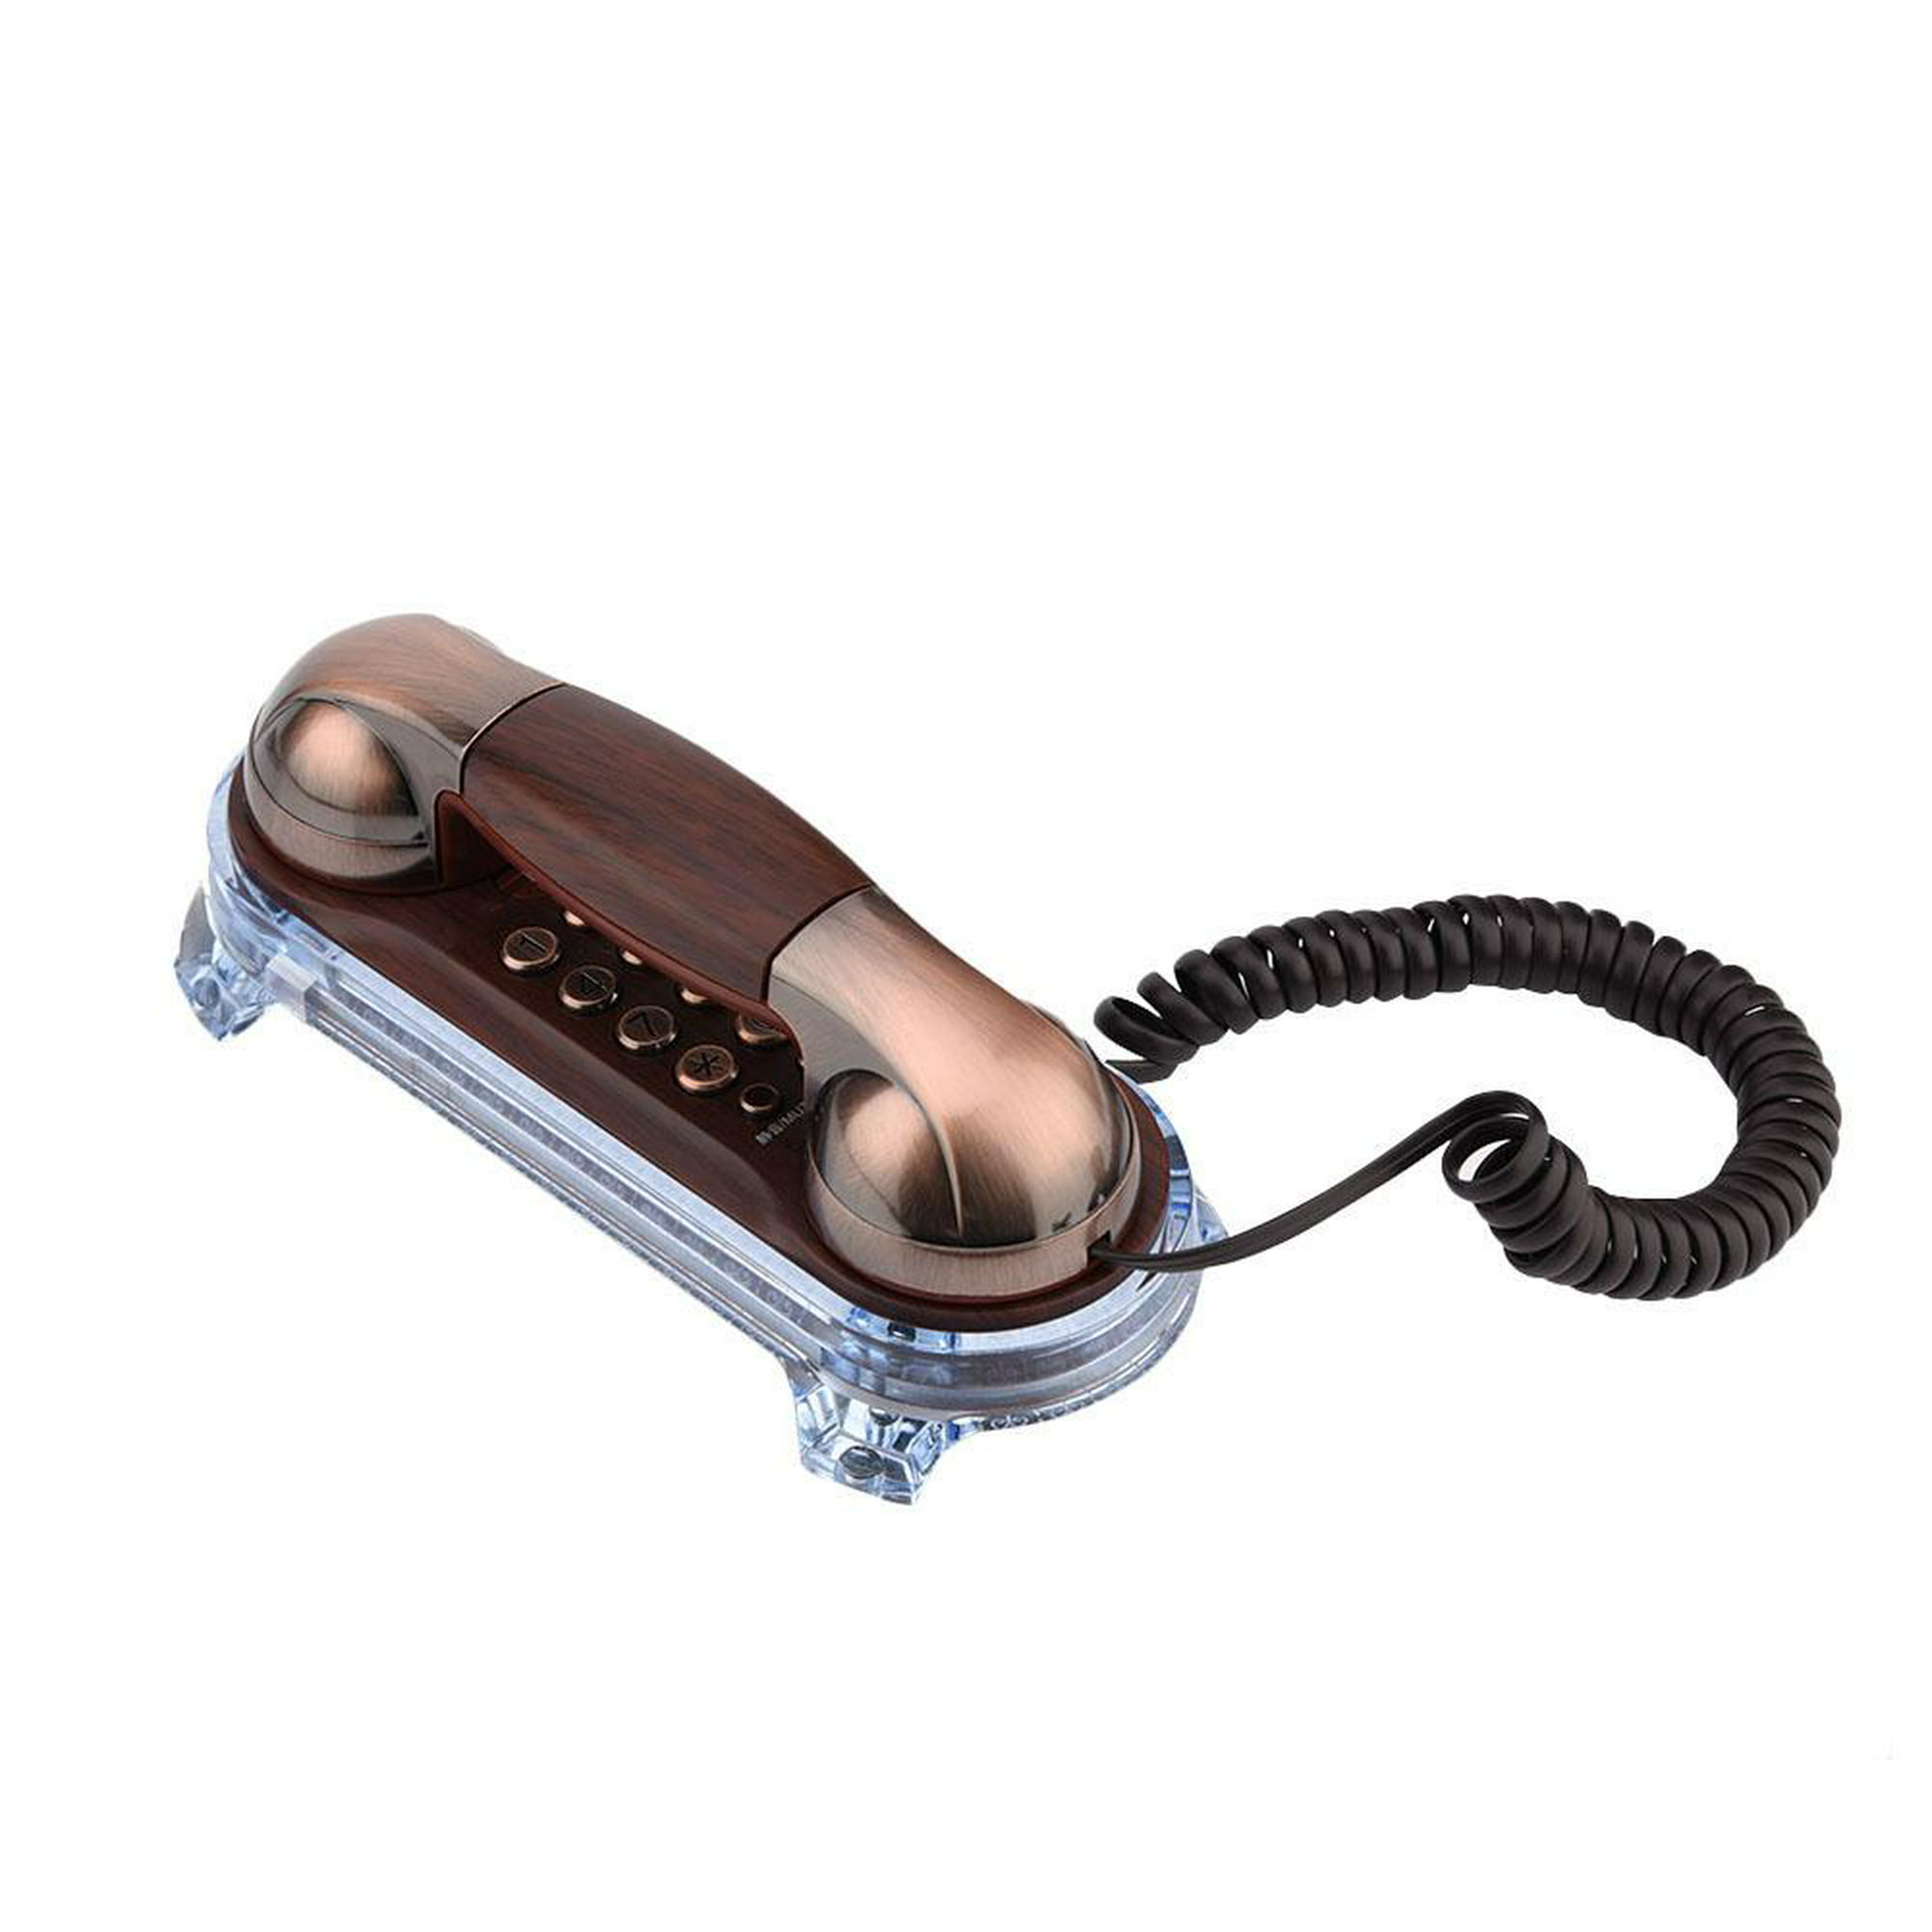 Teléfonos fijos alámbricos de todos los estilos - Elektra en Línea